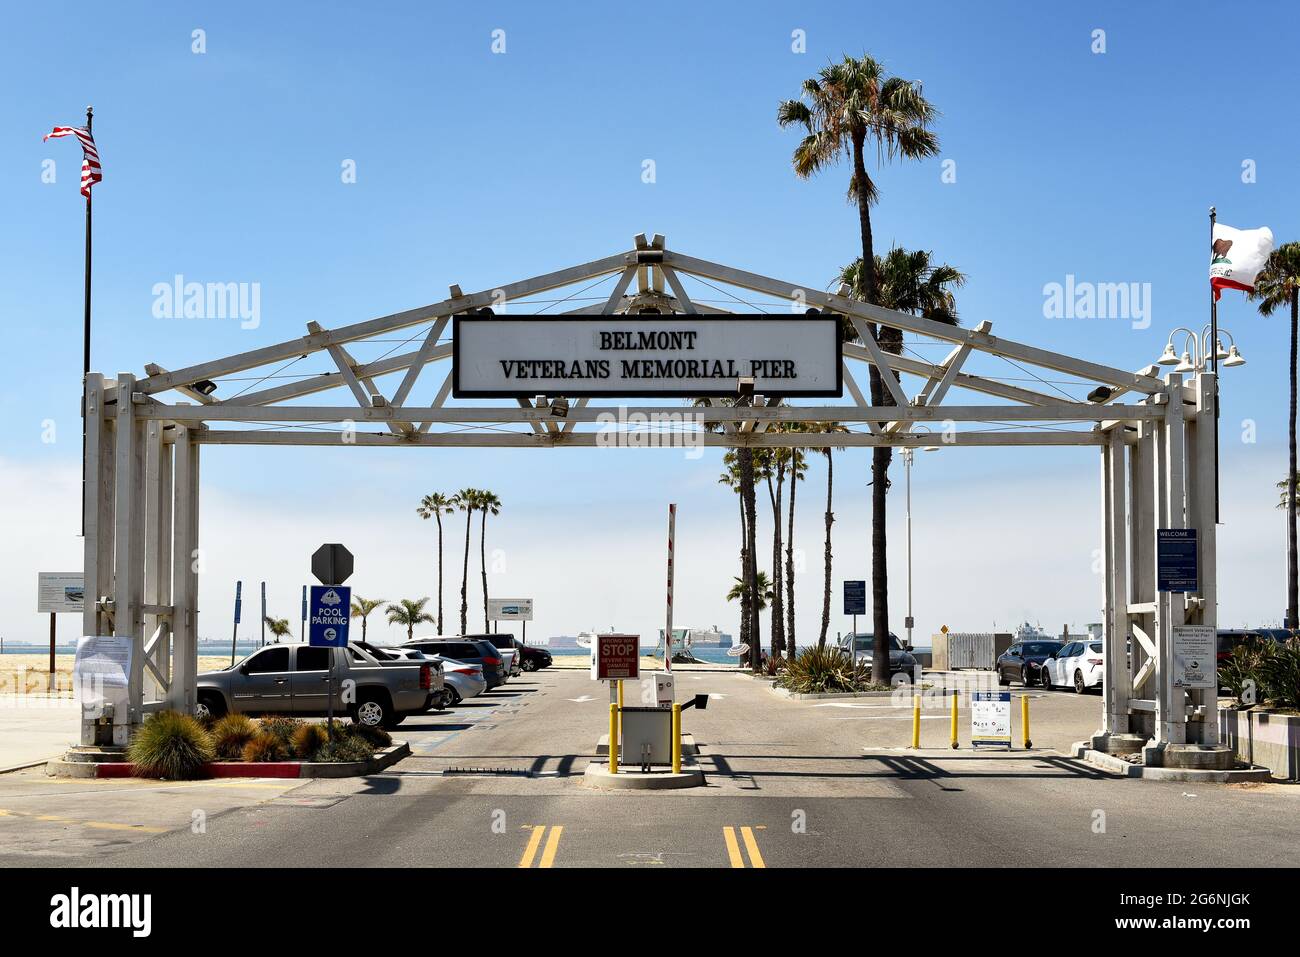 LONG BEACH, KALIFORNIEN - 5. JULI 2021: Parkplatzeingang am Belmont Veterans Memorial Pier. Stockfoto